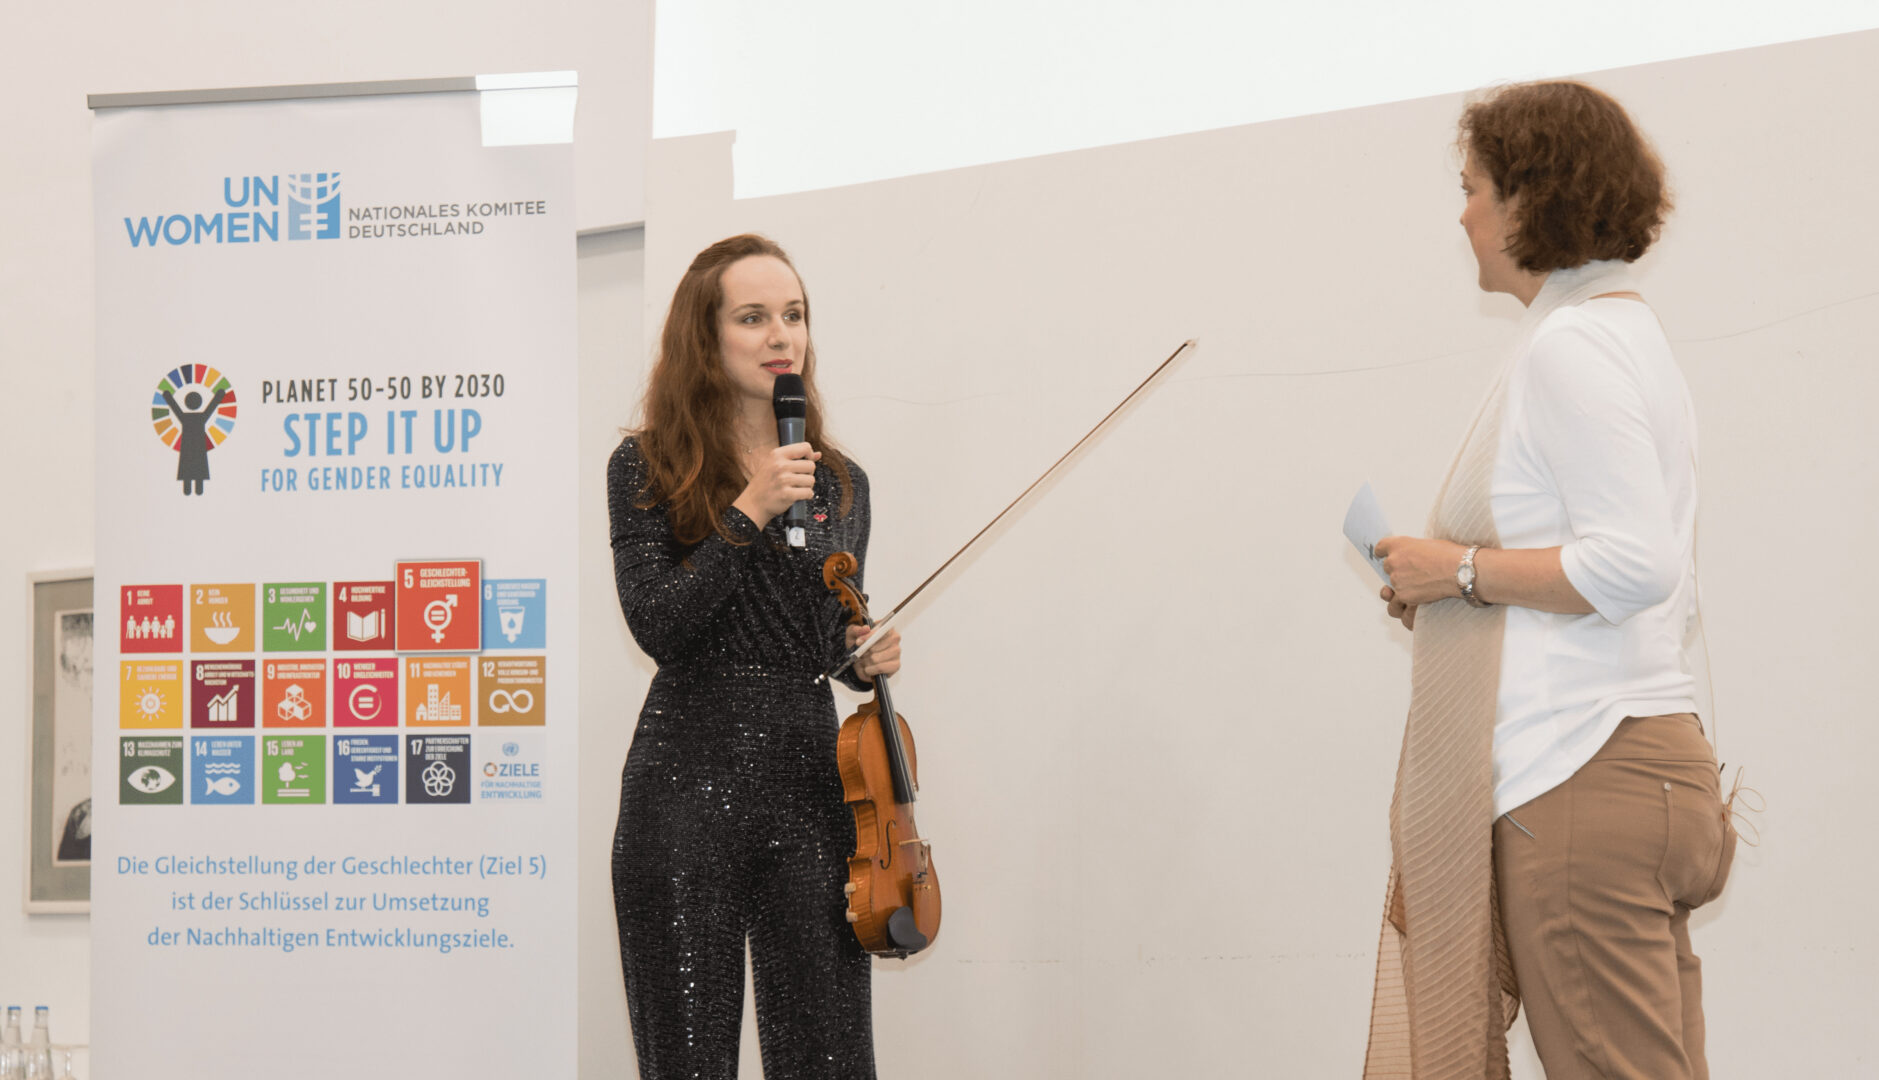 Violinistin und Initiatorin von Music for our Planet Lea Brückner hält ihre Geige in der Hand und hält eine Rede gegenüberstehend Bürgermeisterin Dr. Ursula Sautter. Credit: UN Women Deutschland/Ortrud Ladleif